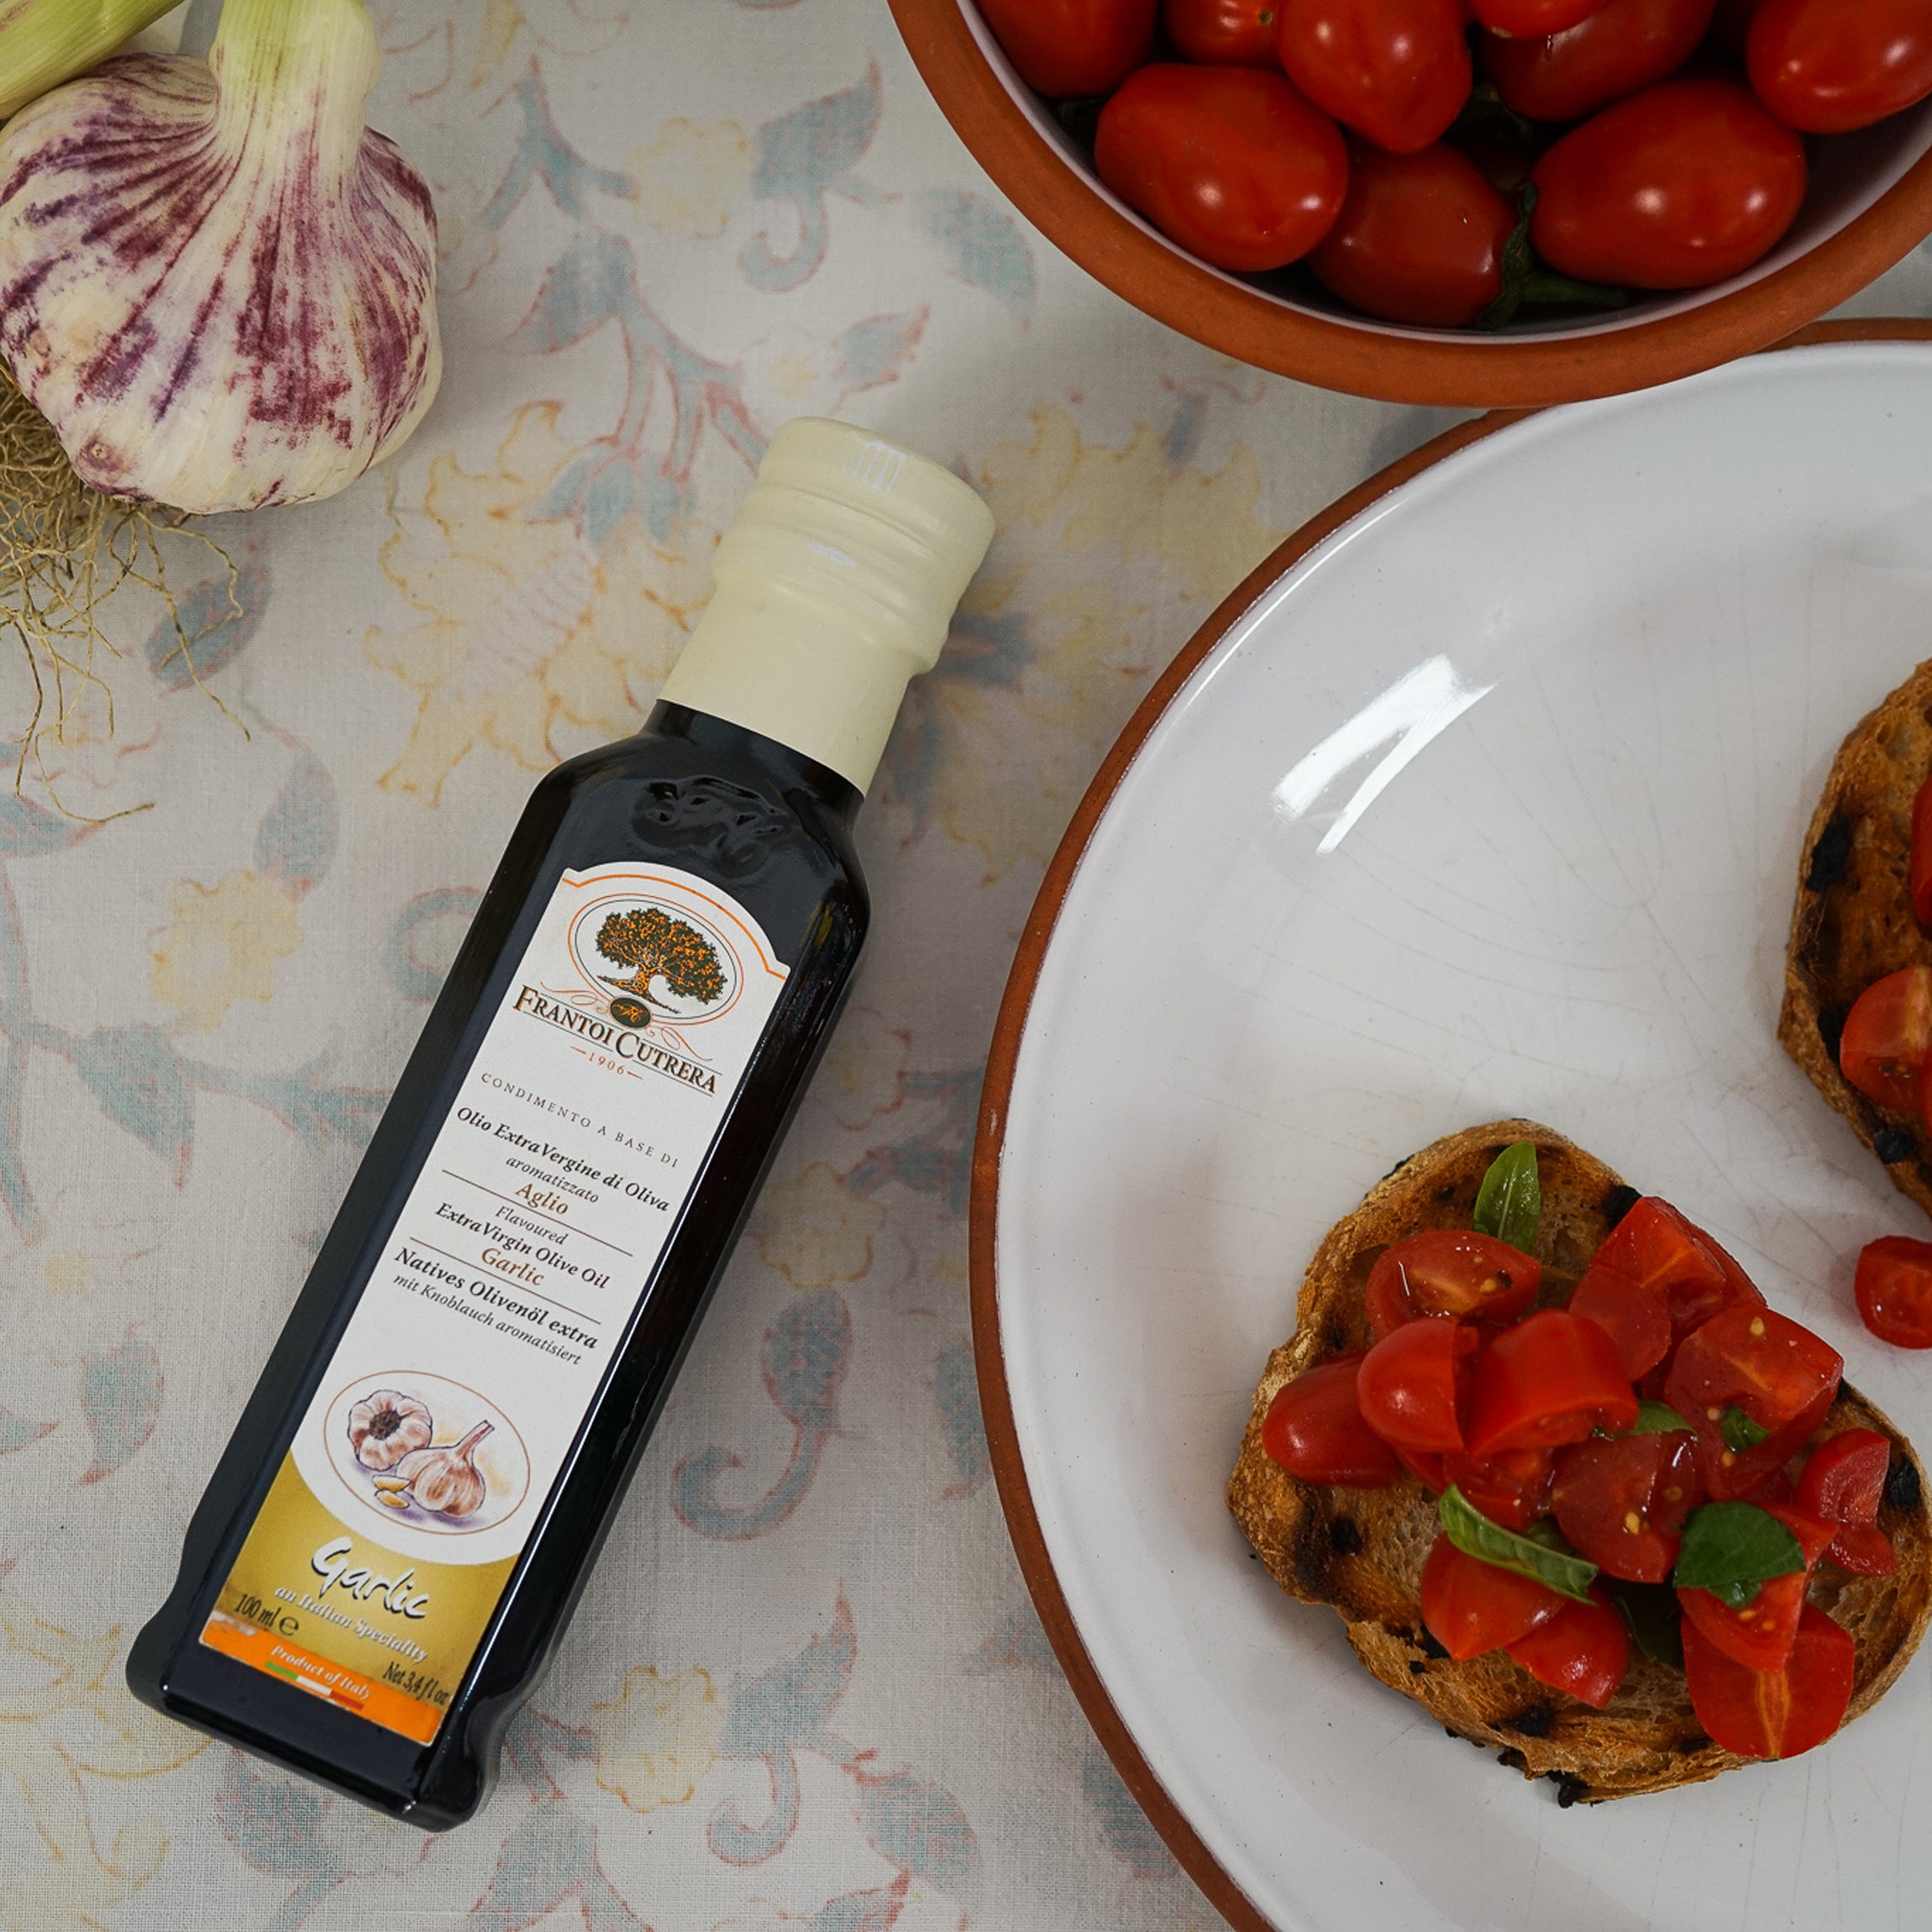 frantoi cutrera olive oil